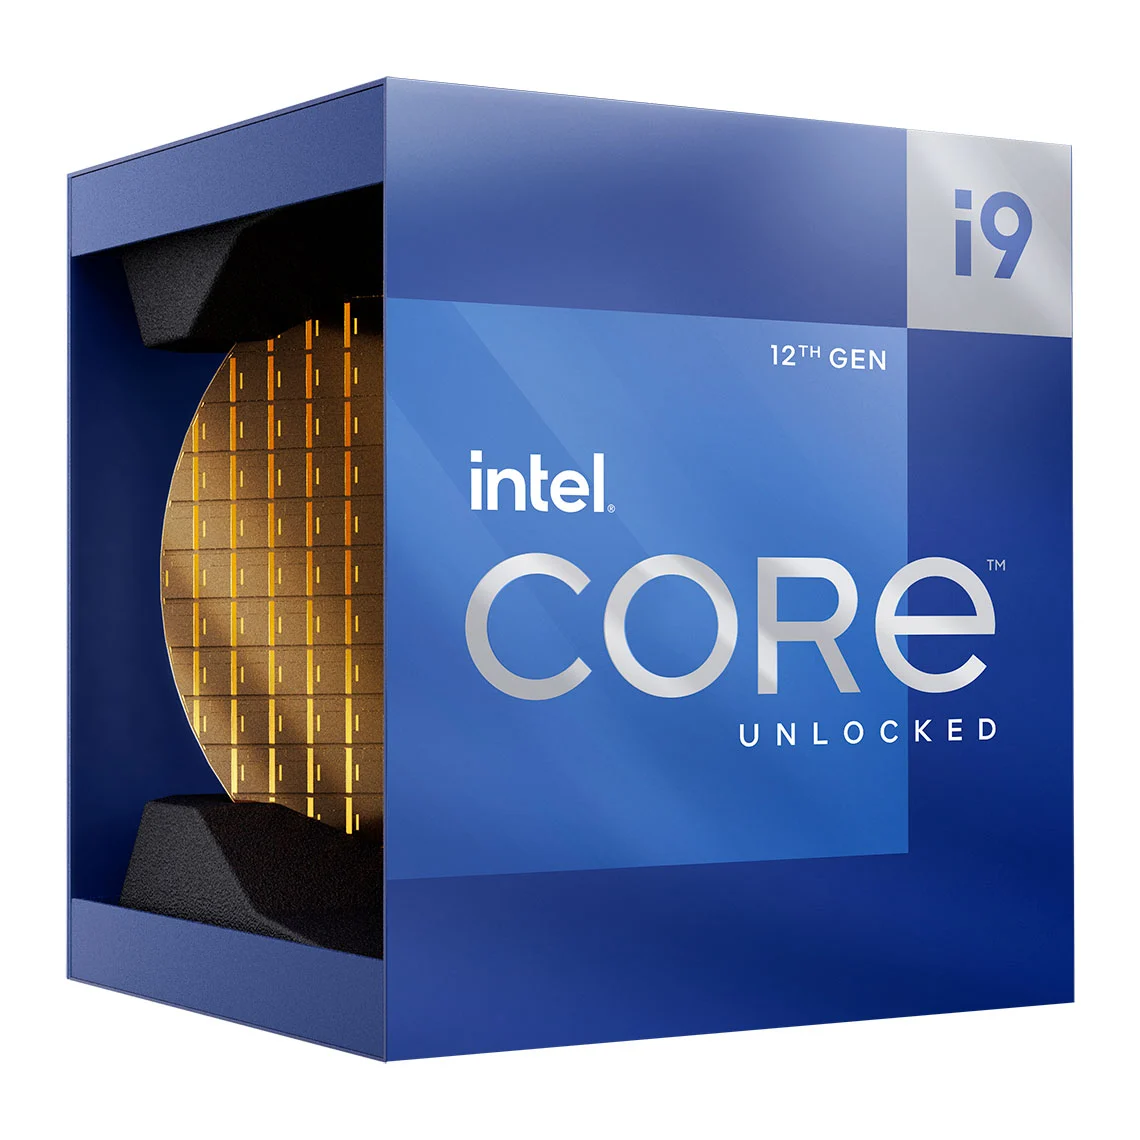 Intel announces Core i9 Extreme Edition, most extreme desktop